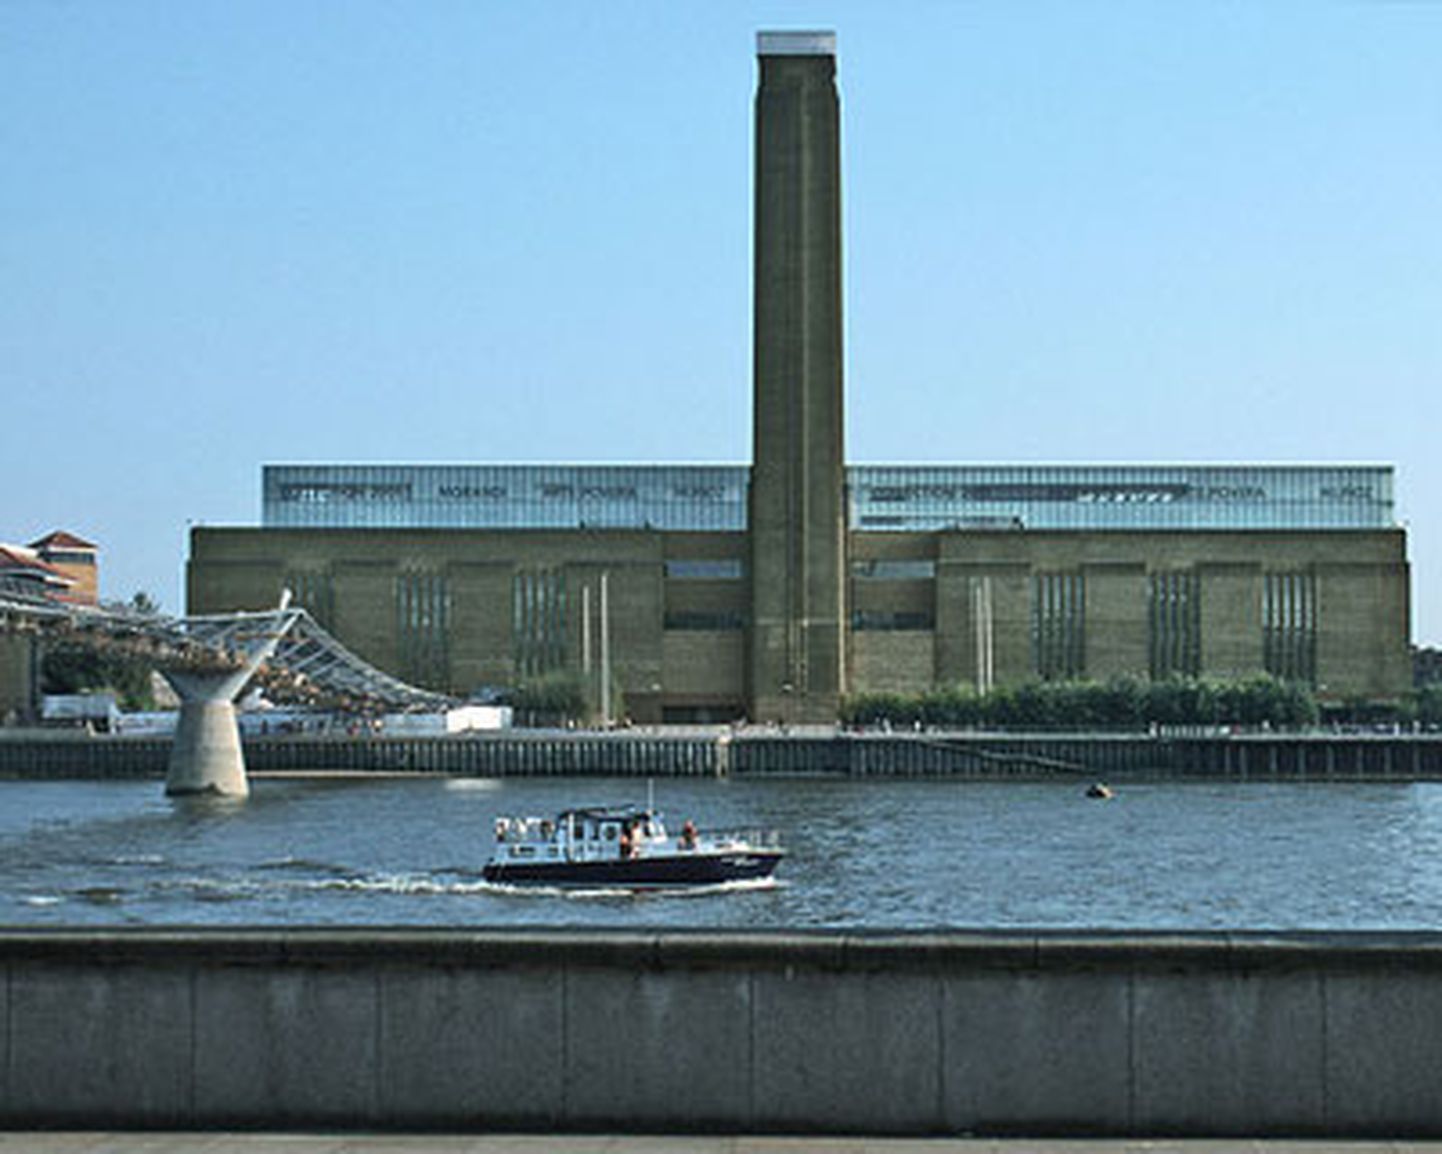 Londonas Teita modernās mākslas galerija.